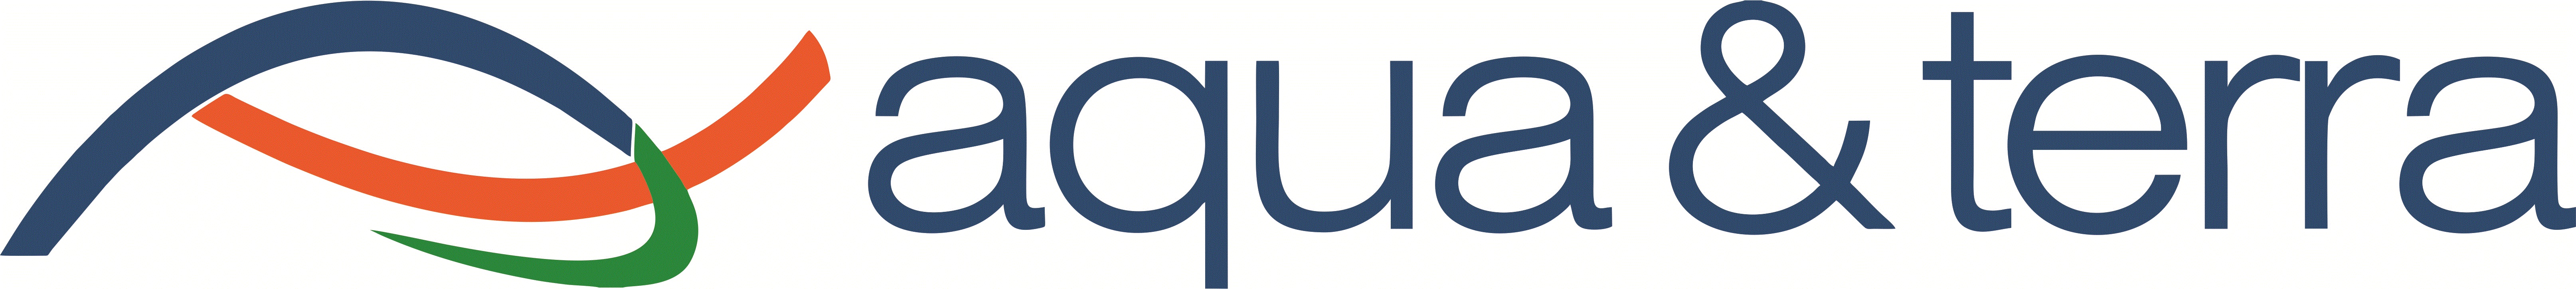 Aqua Terra Logo